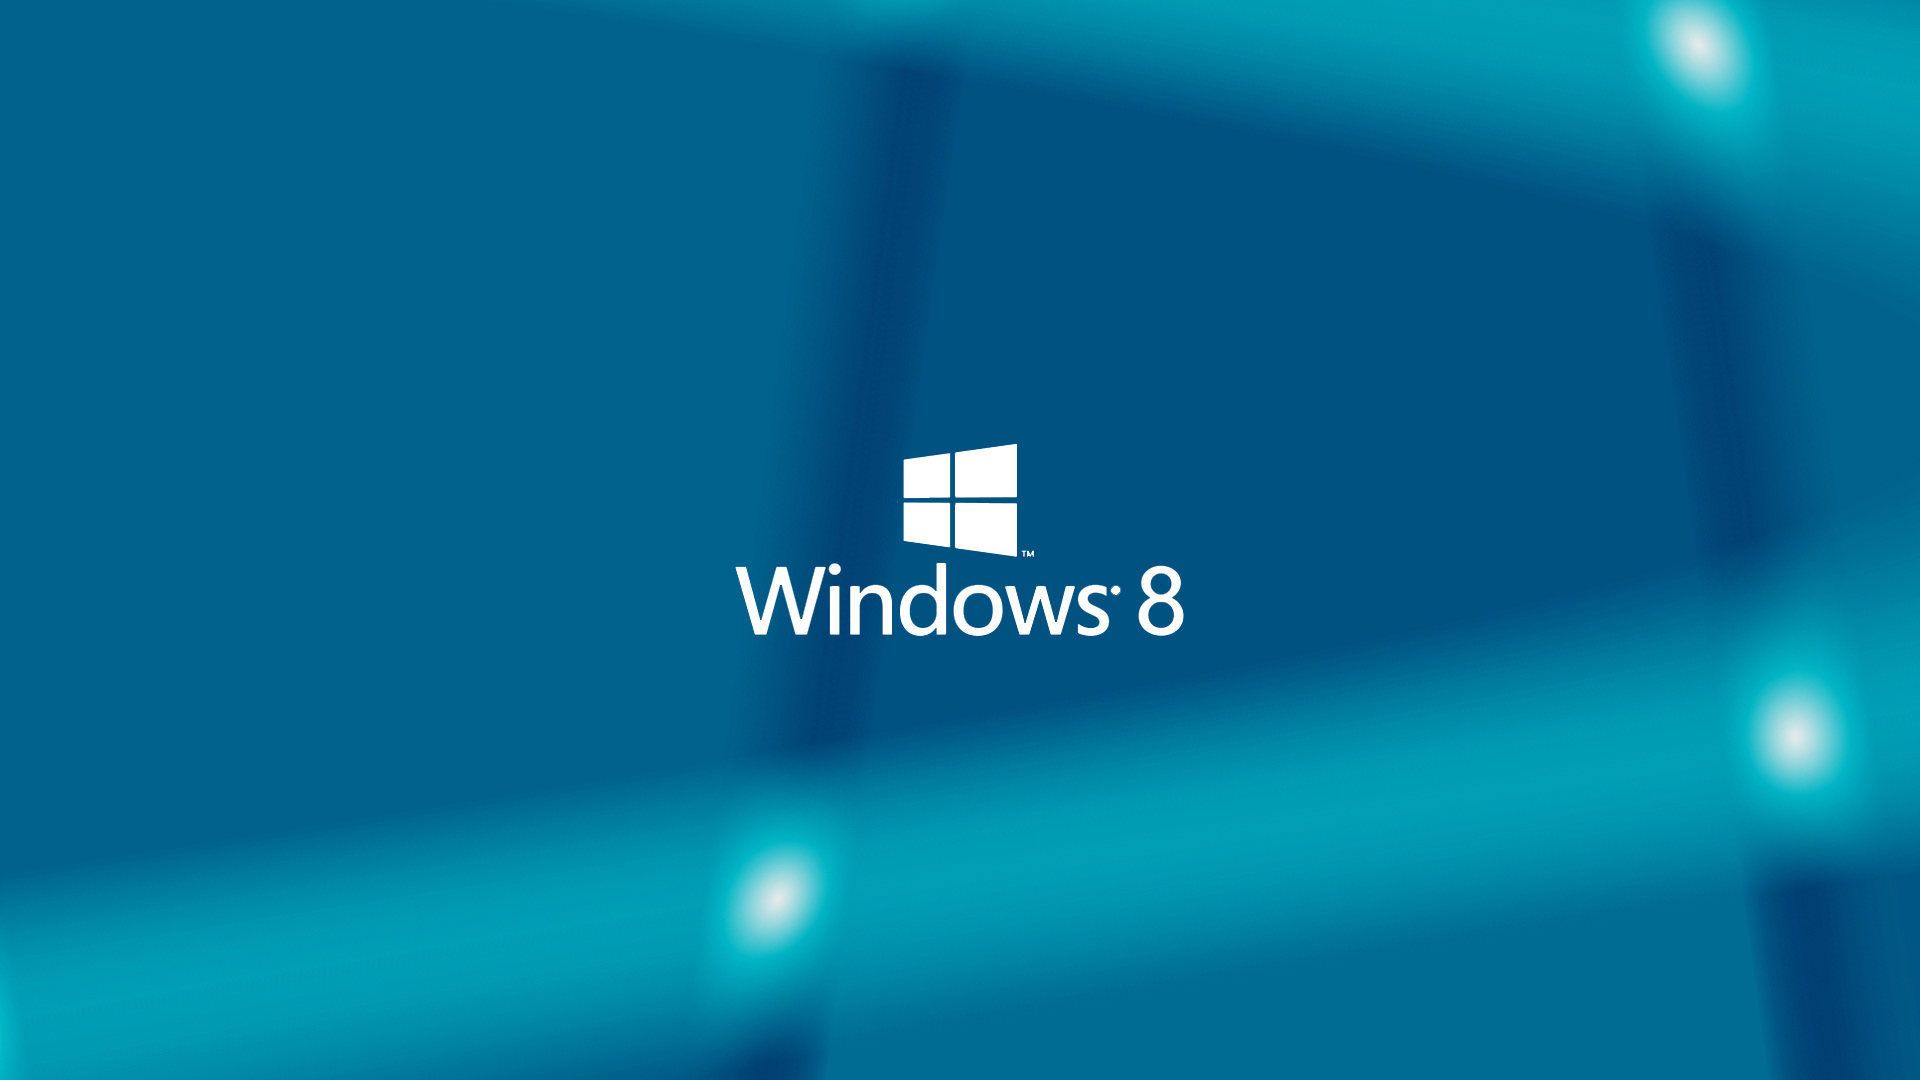 Hình nền Windows 8 cho máy tính để bàn sẽ làm cho không gian làm việc của bạn trở nên thú vị và đẳng cấp hơn bao giờ hết. Hãy truy cập vào bộ sưu tập hình nền của chúng tôi để tìm cho mình những lựa chọn tuyệt đẹp.